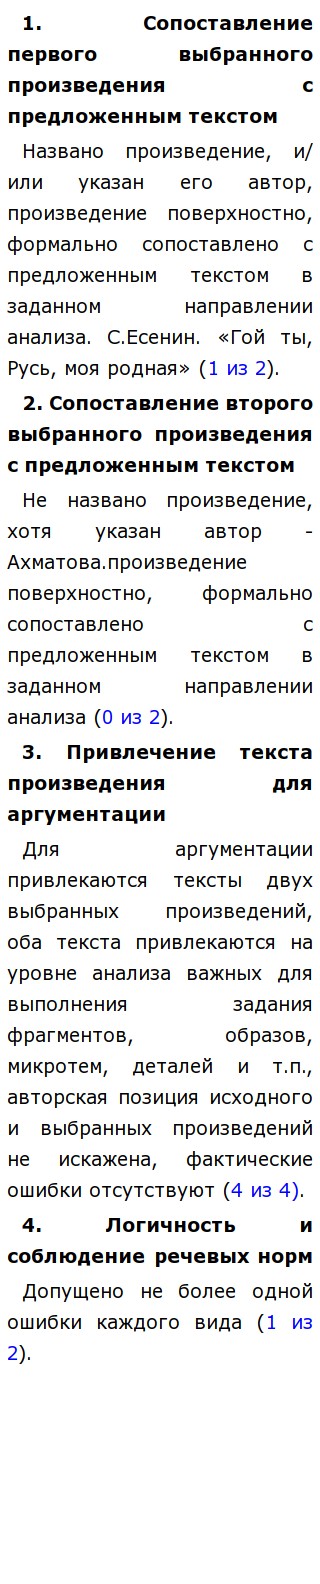 Сочинение: Тема родины в русской литературе